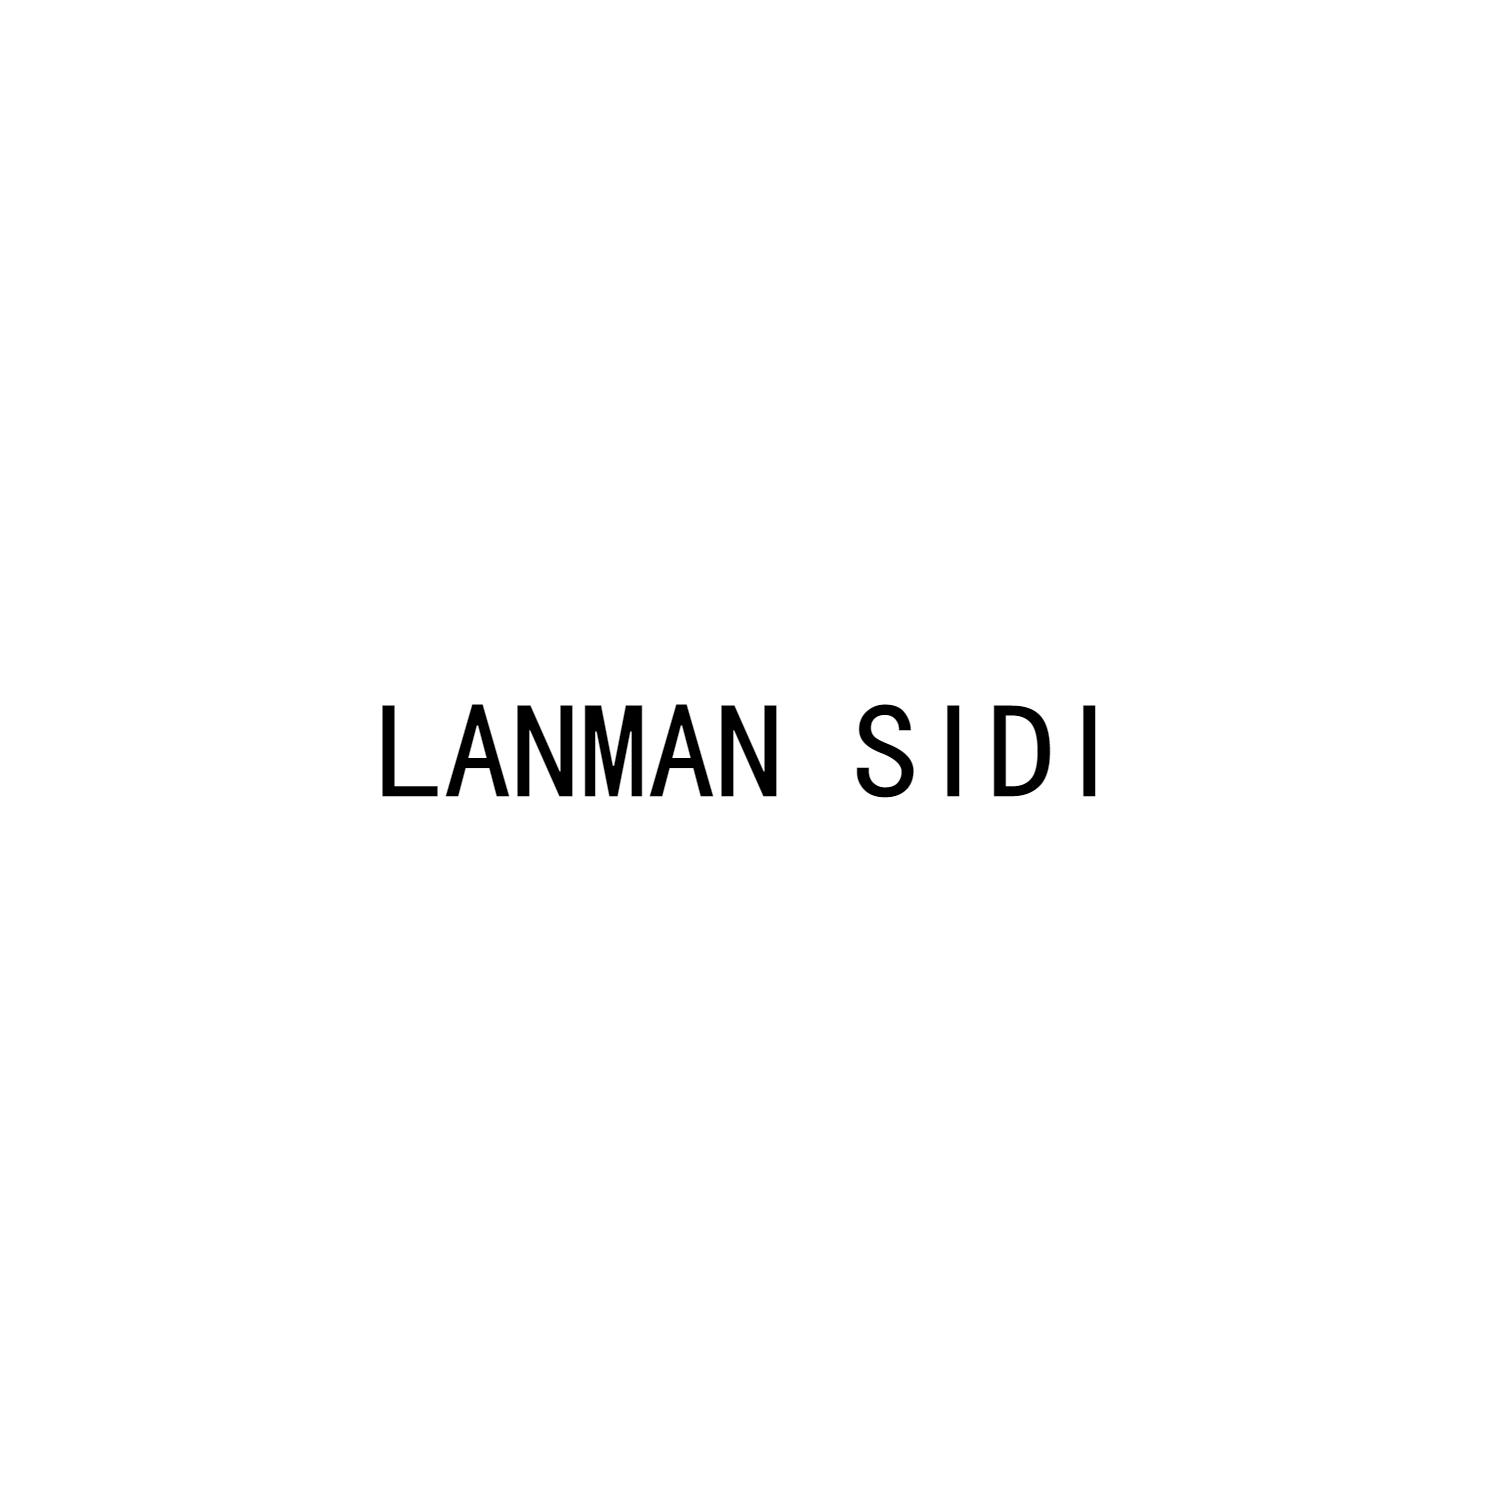 LANMAN SIDI